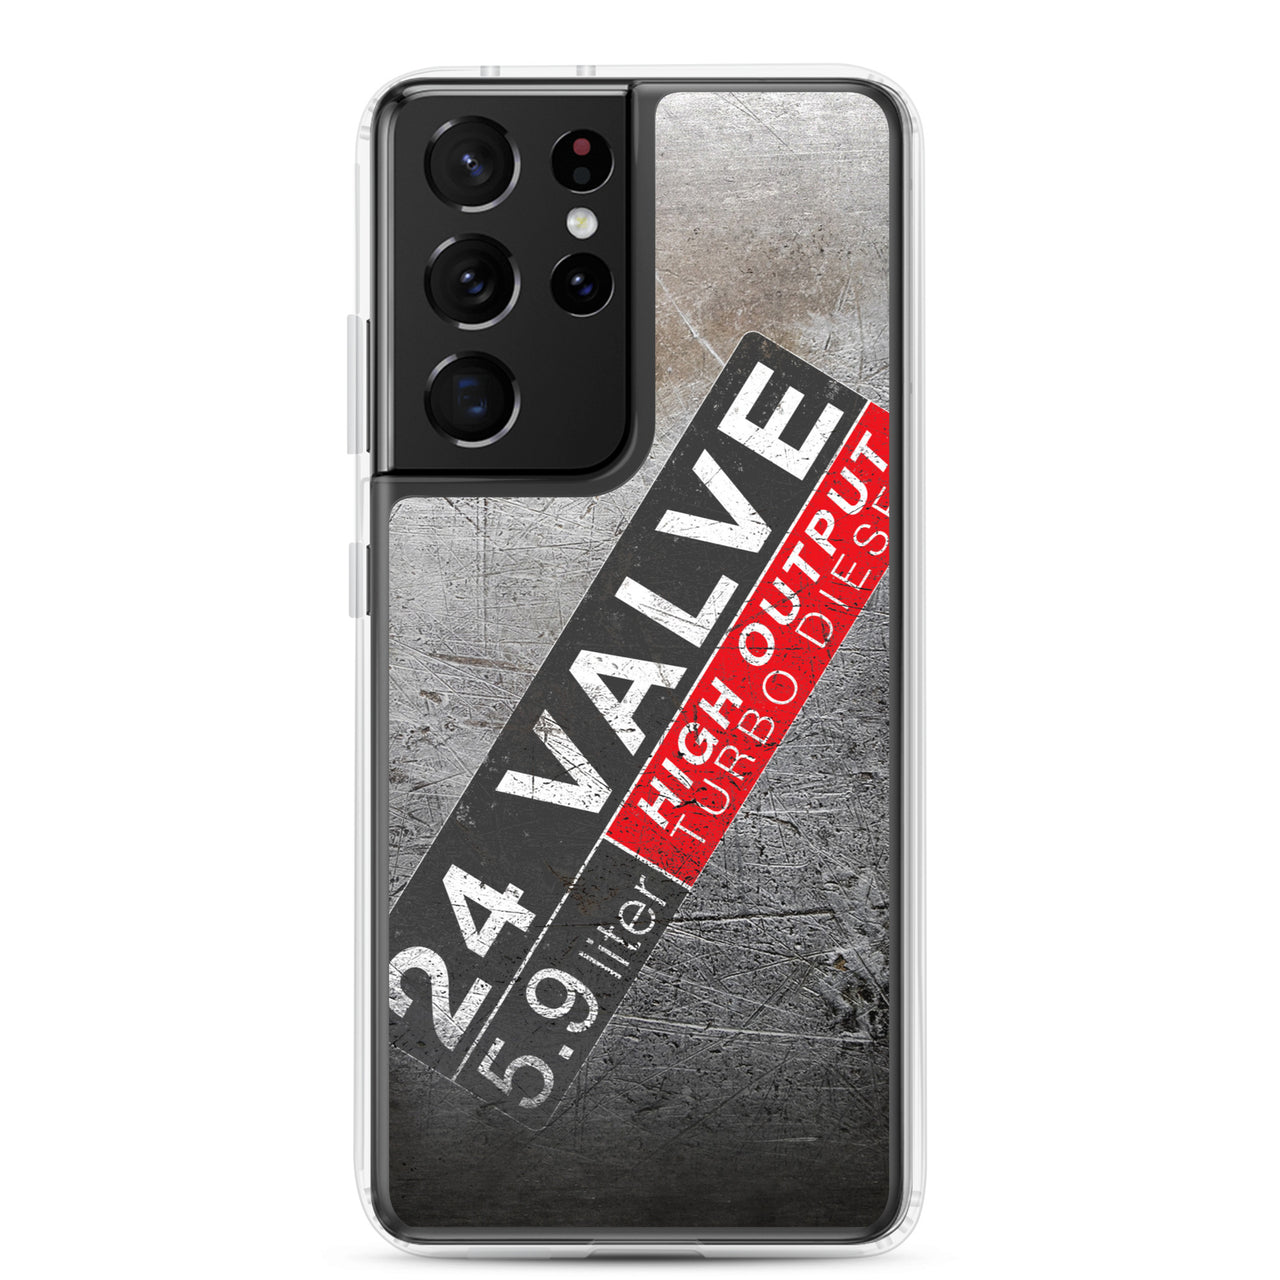 24 Valve 5.9 Diesel Phone Case for Samsung®